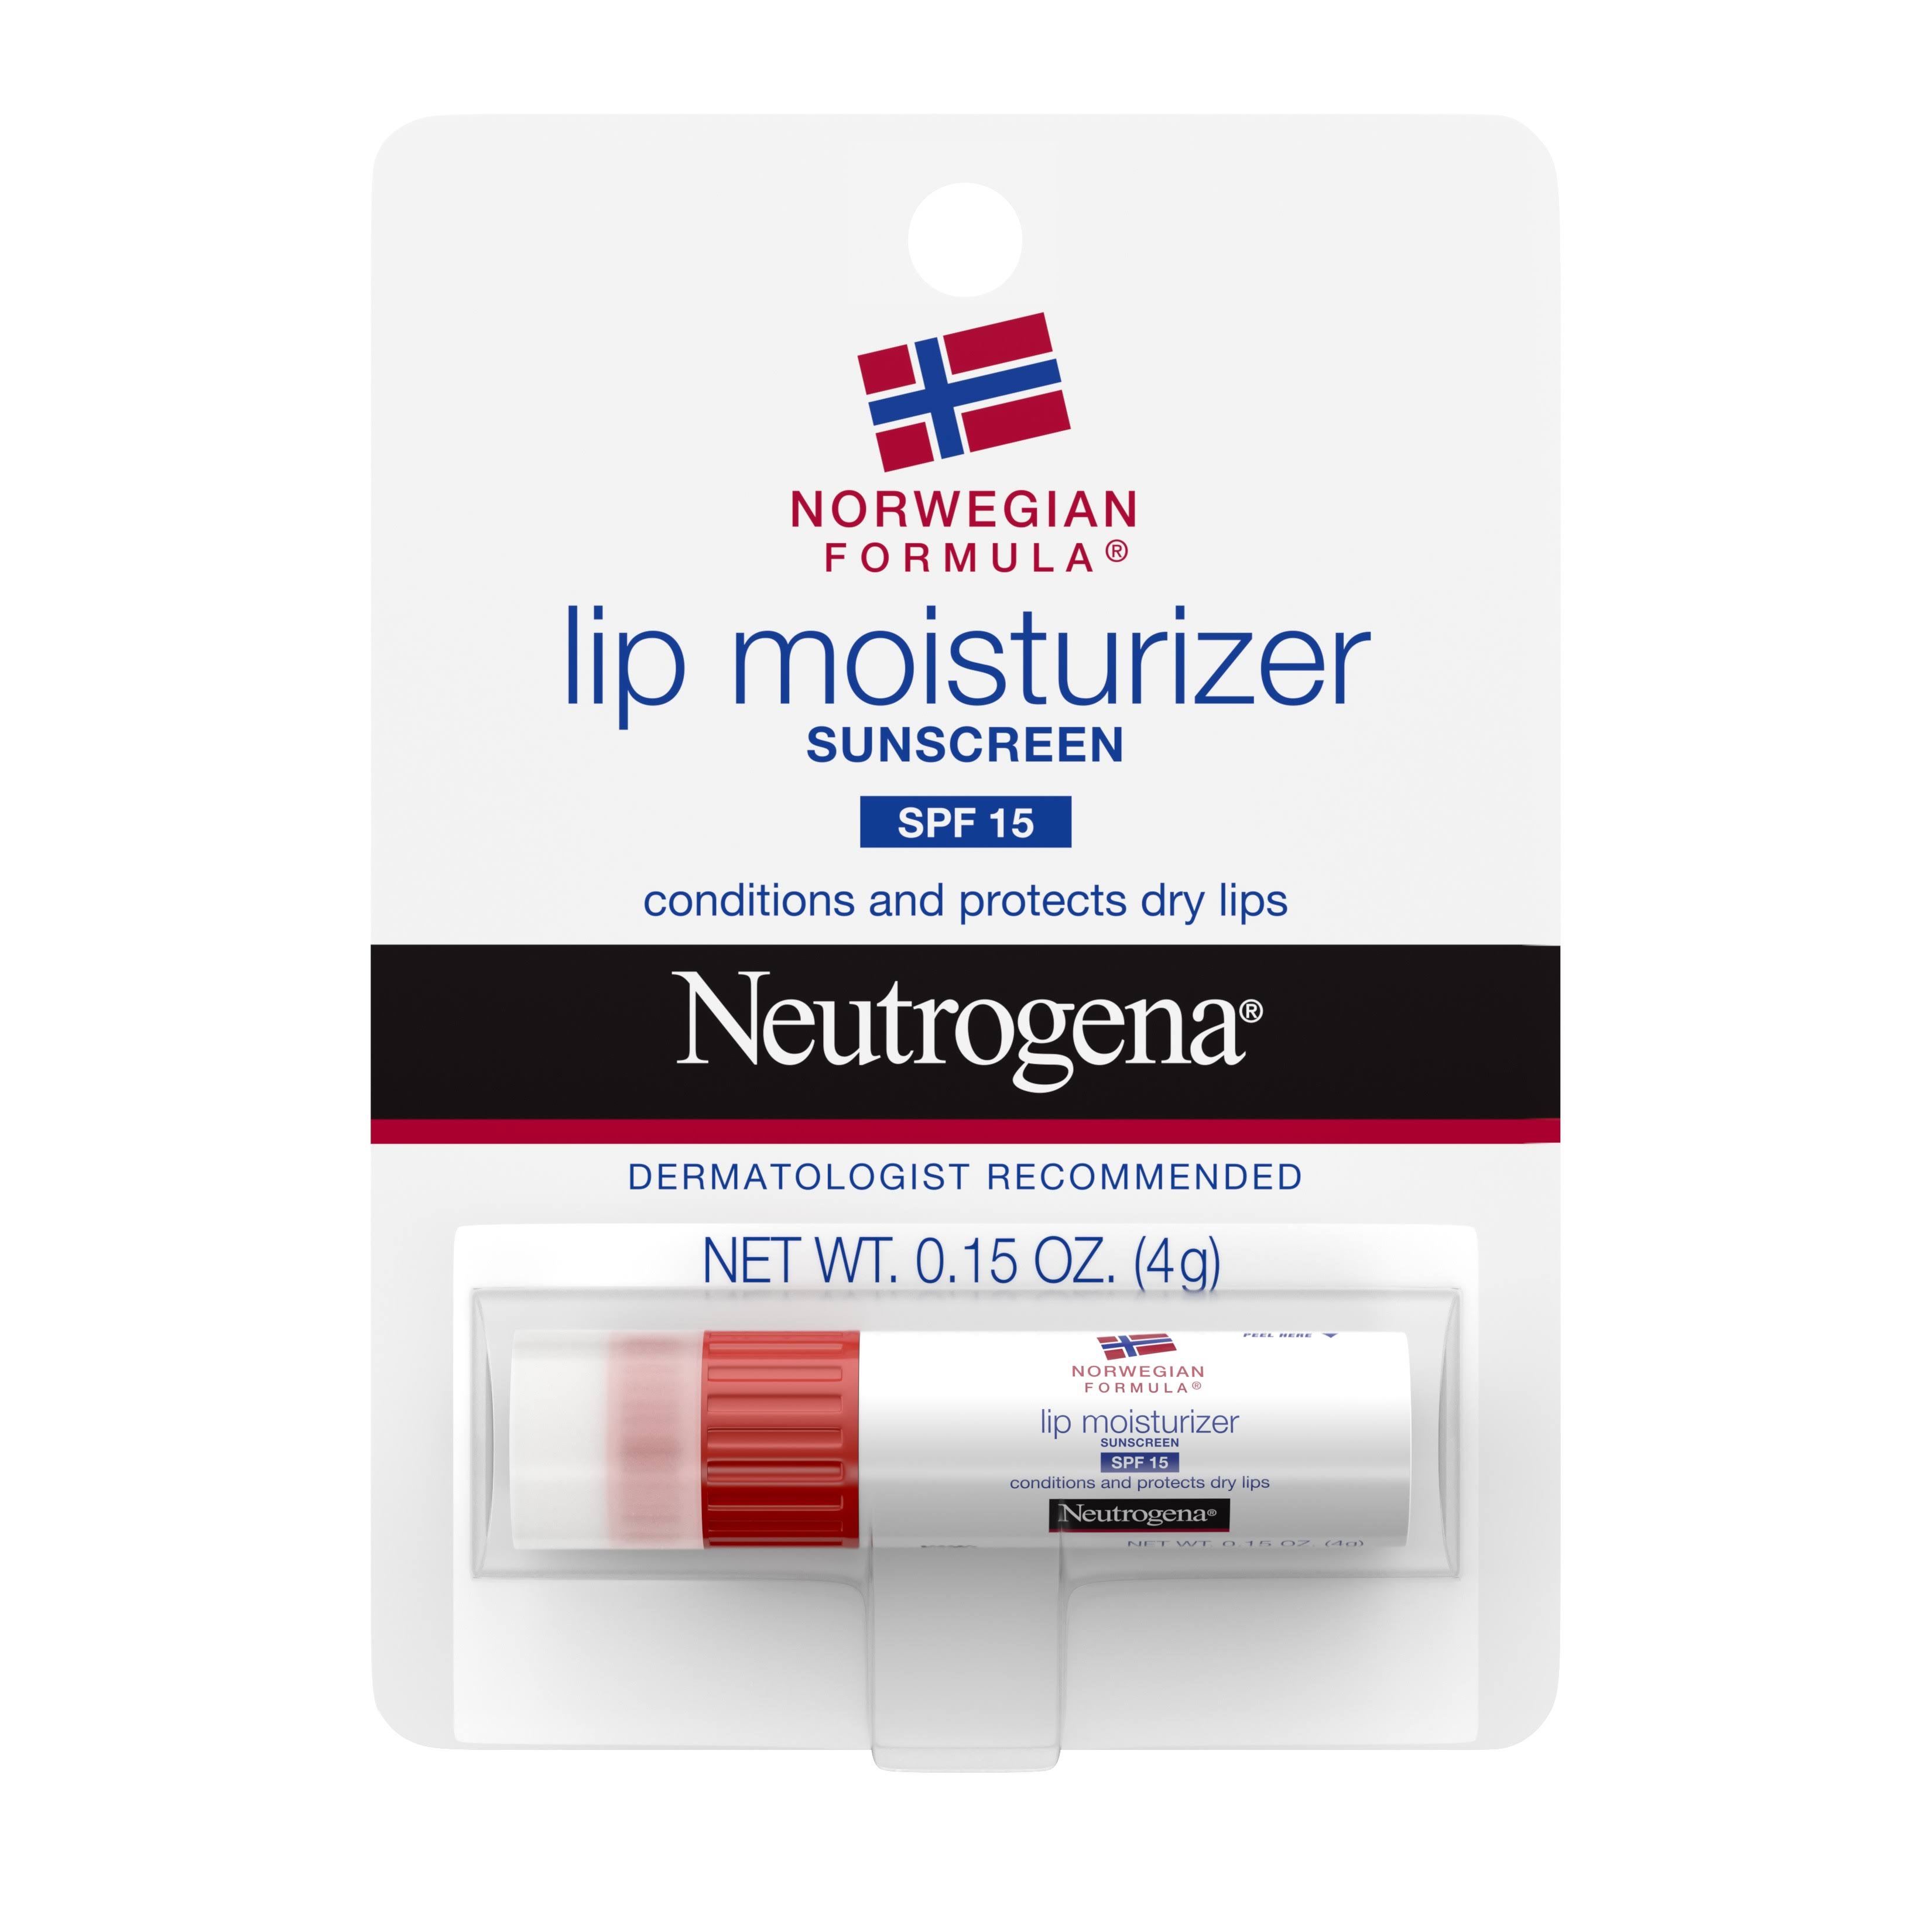 Neutrogena Lip Moisturizer - 4g, SPF15, 4g